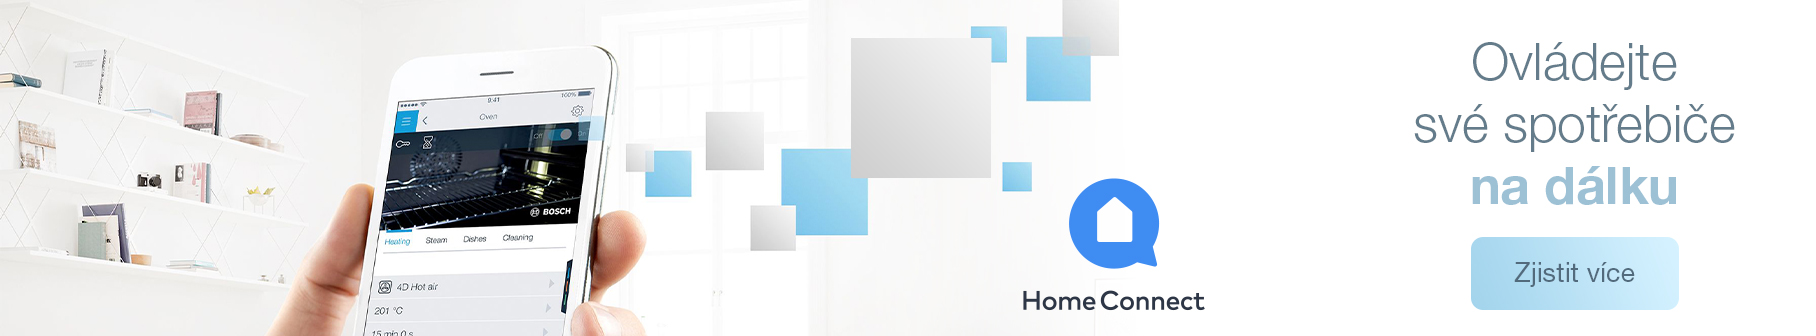 Bosch - Home Connect - Ovládejte své spotřebiče na dálku